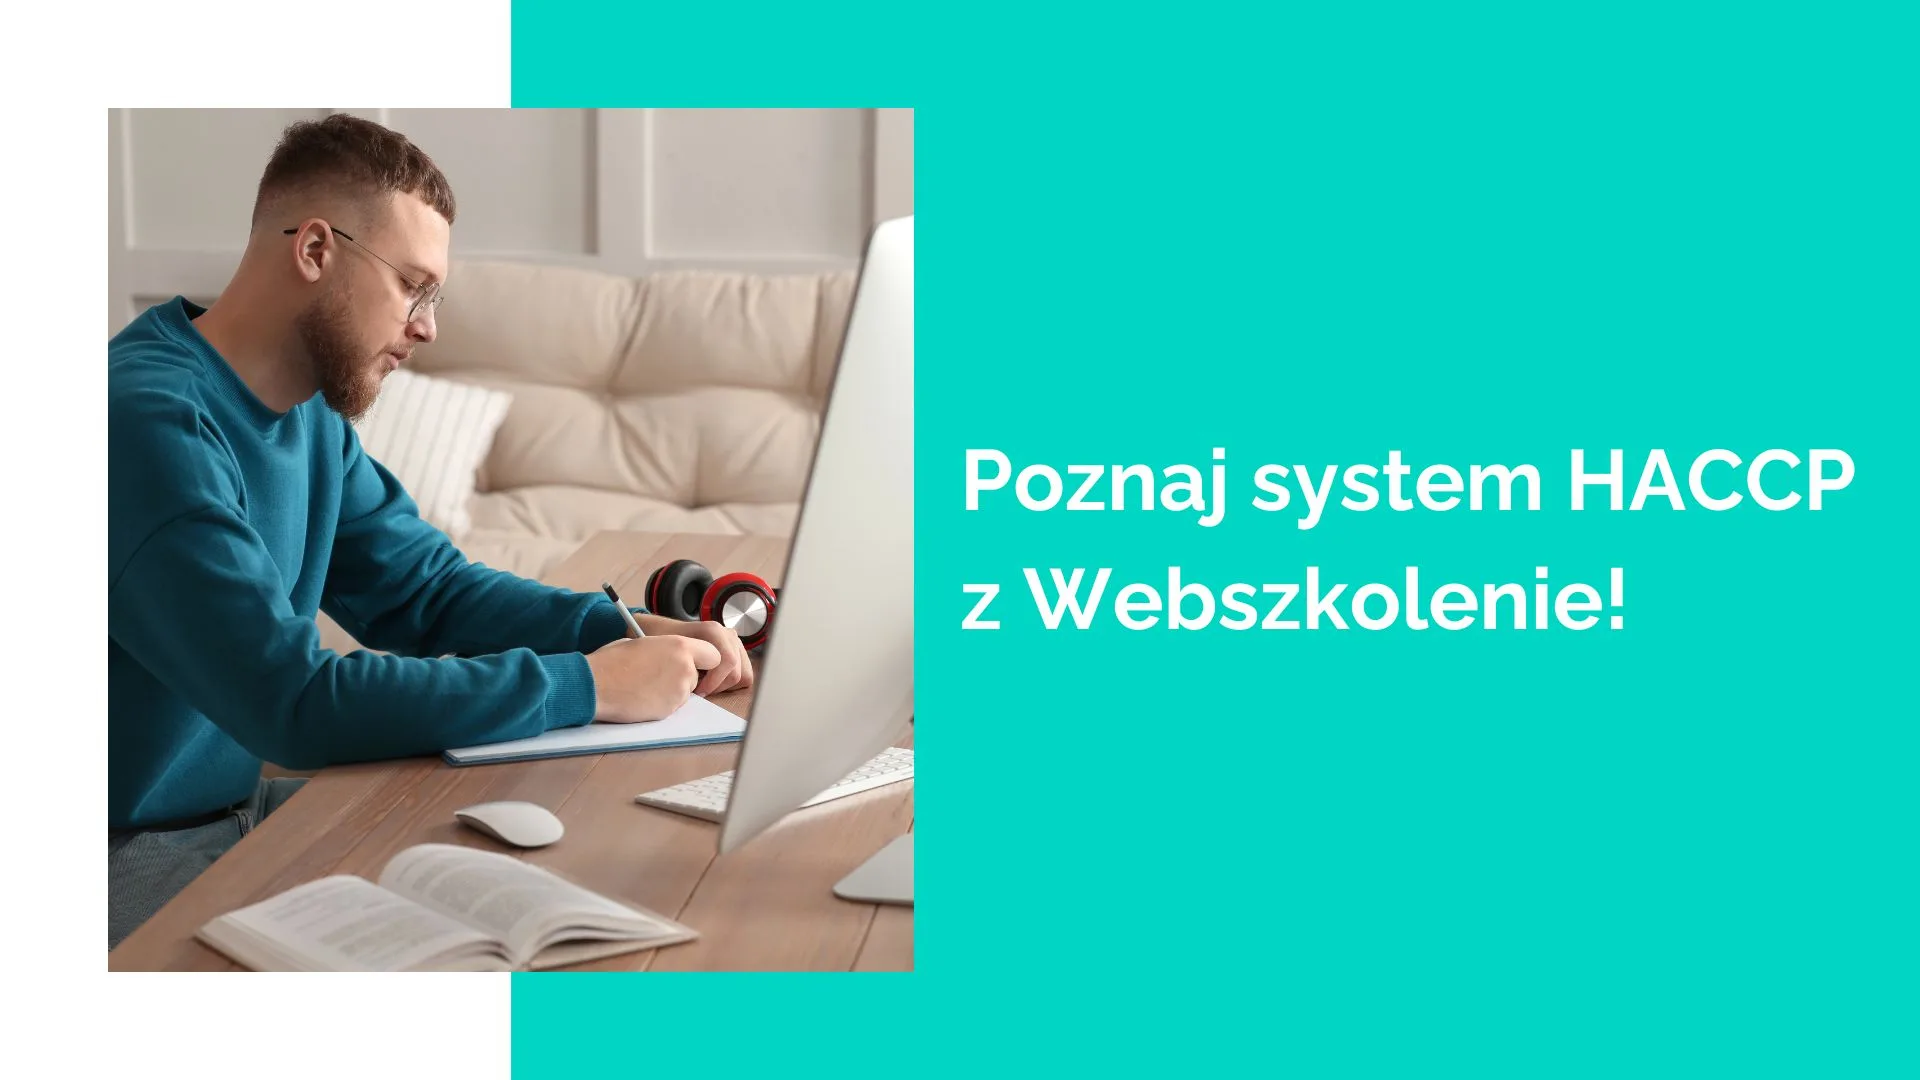 Poznaj system HACCP z Webszkolenie.pl